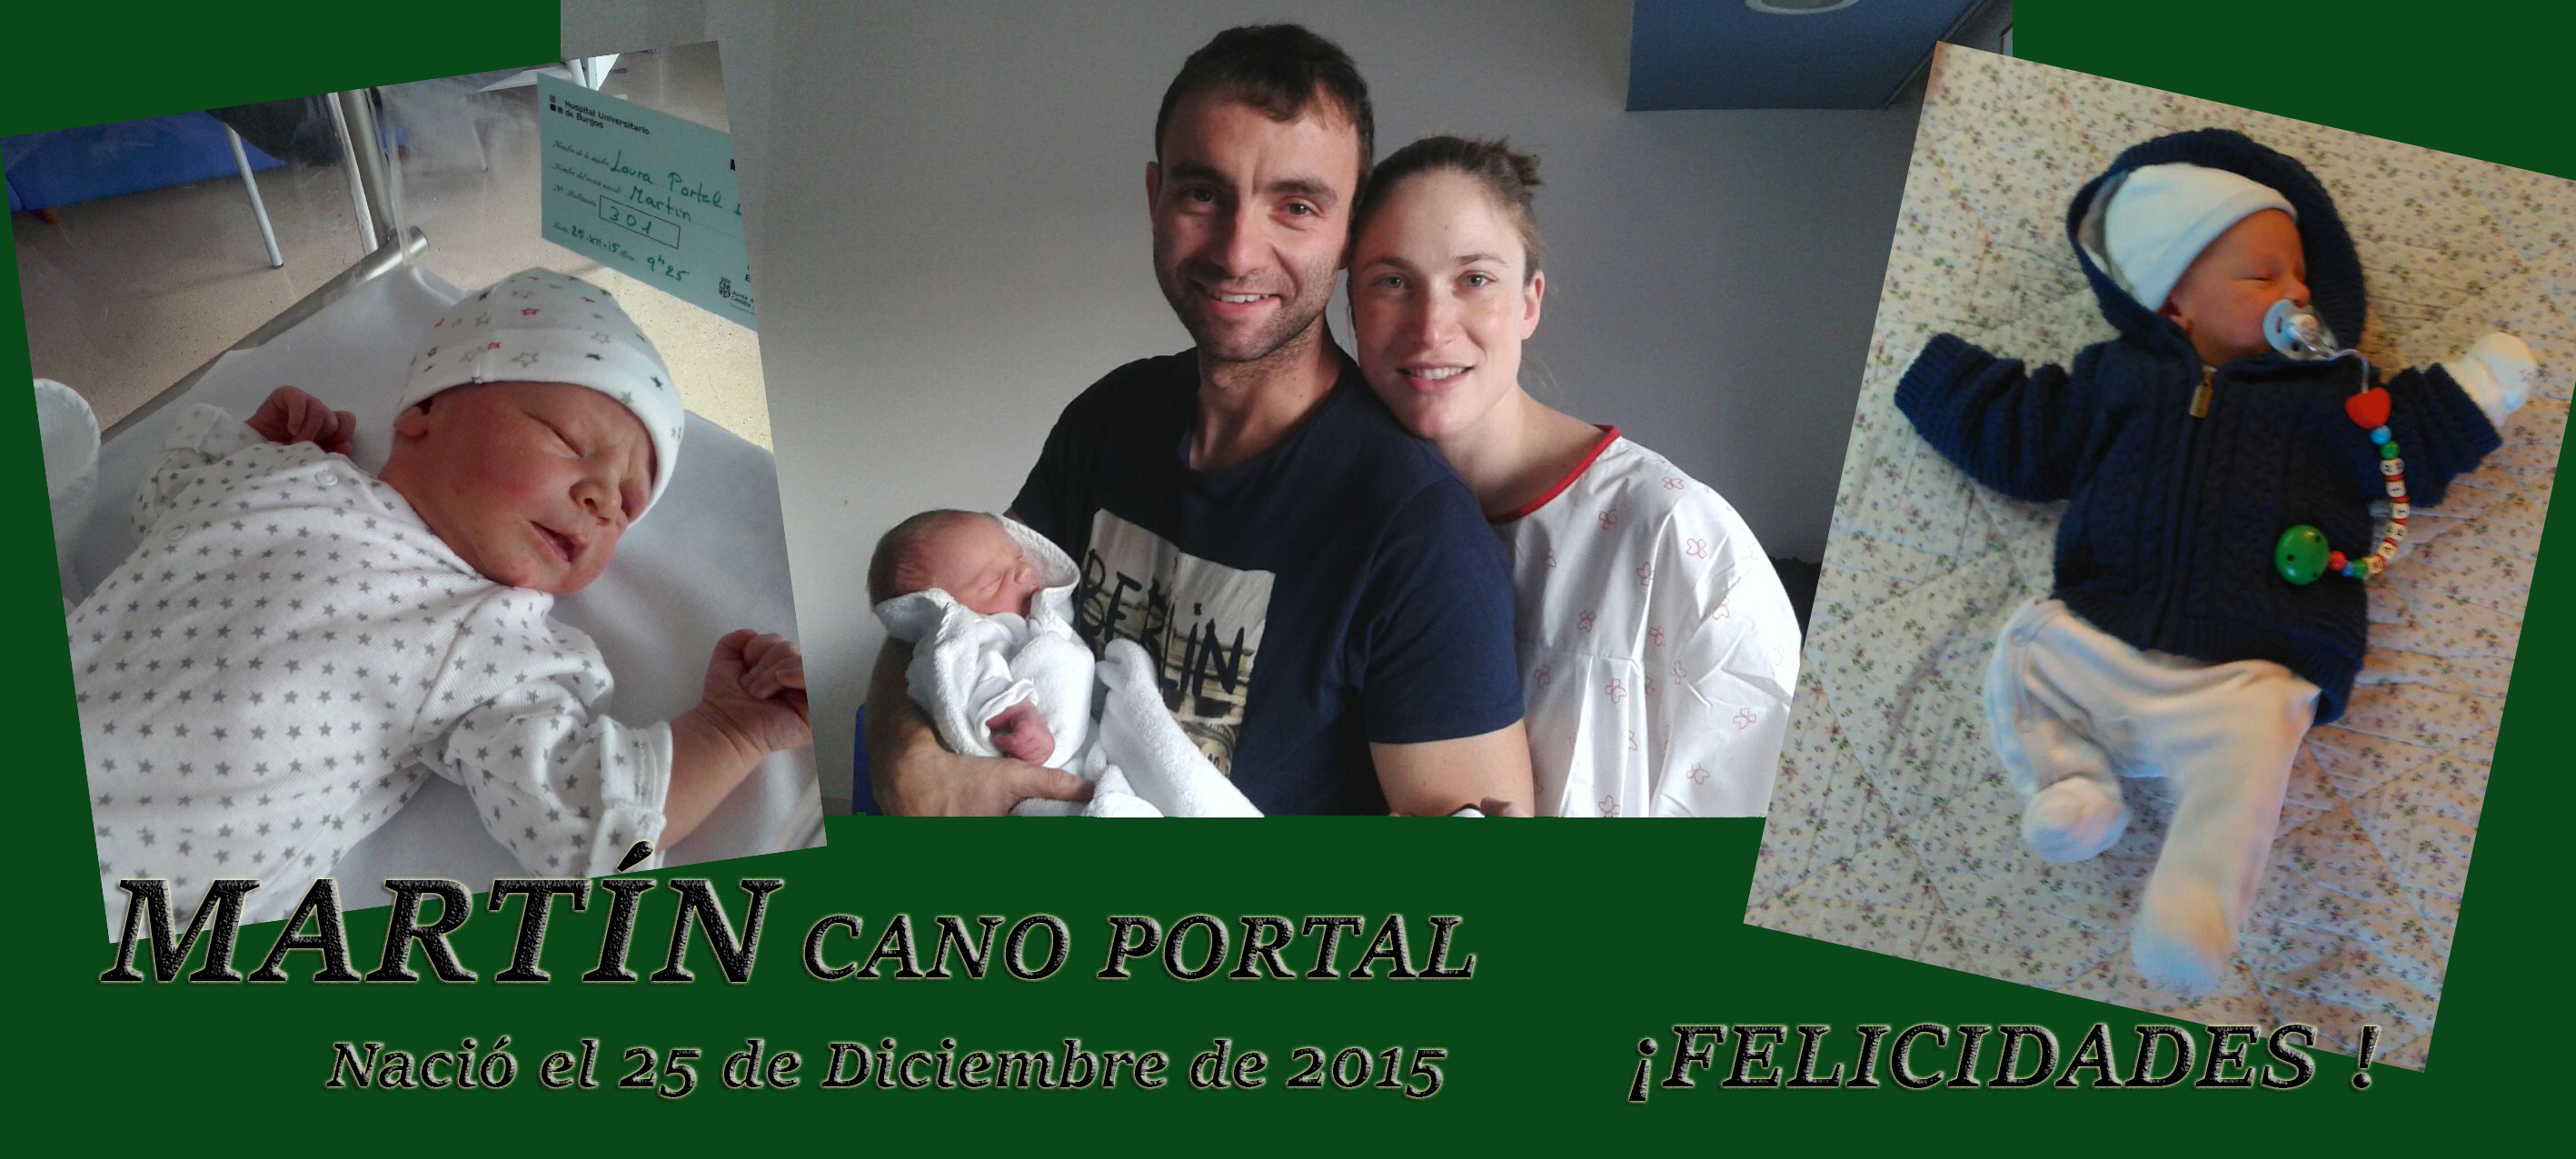 MARTÍN CANO PORTAL, nació el 25-12-2015